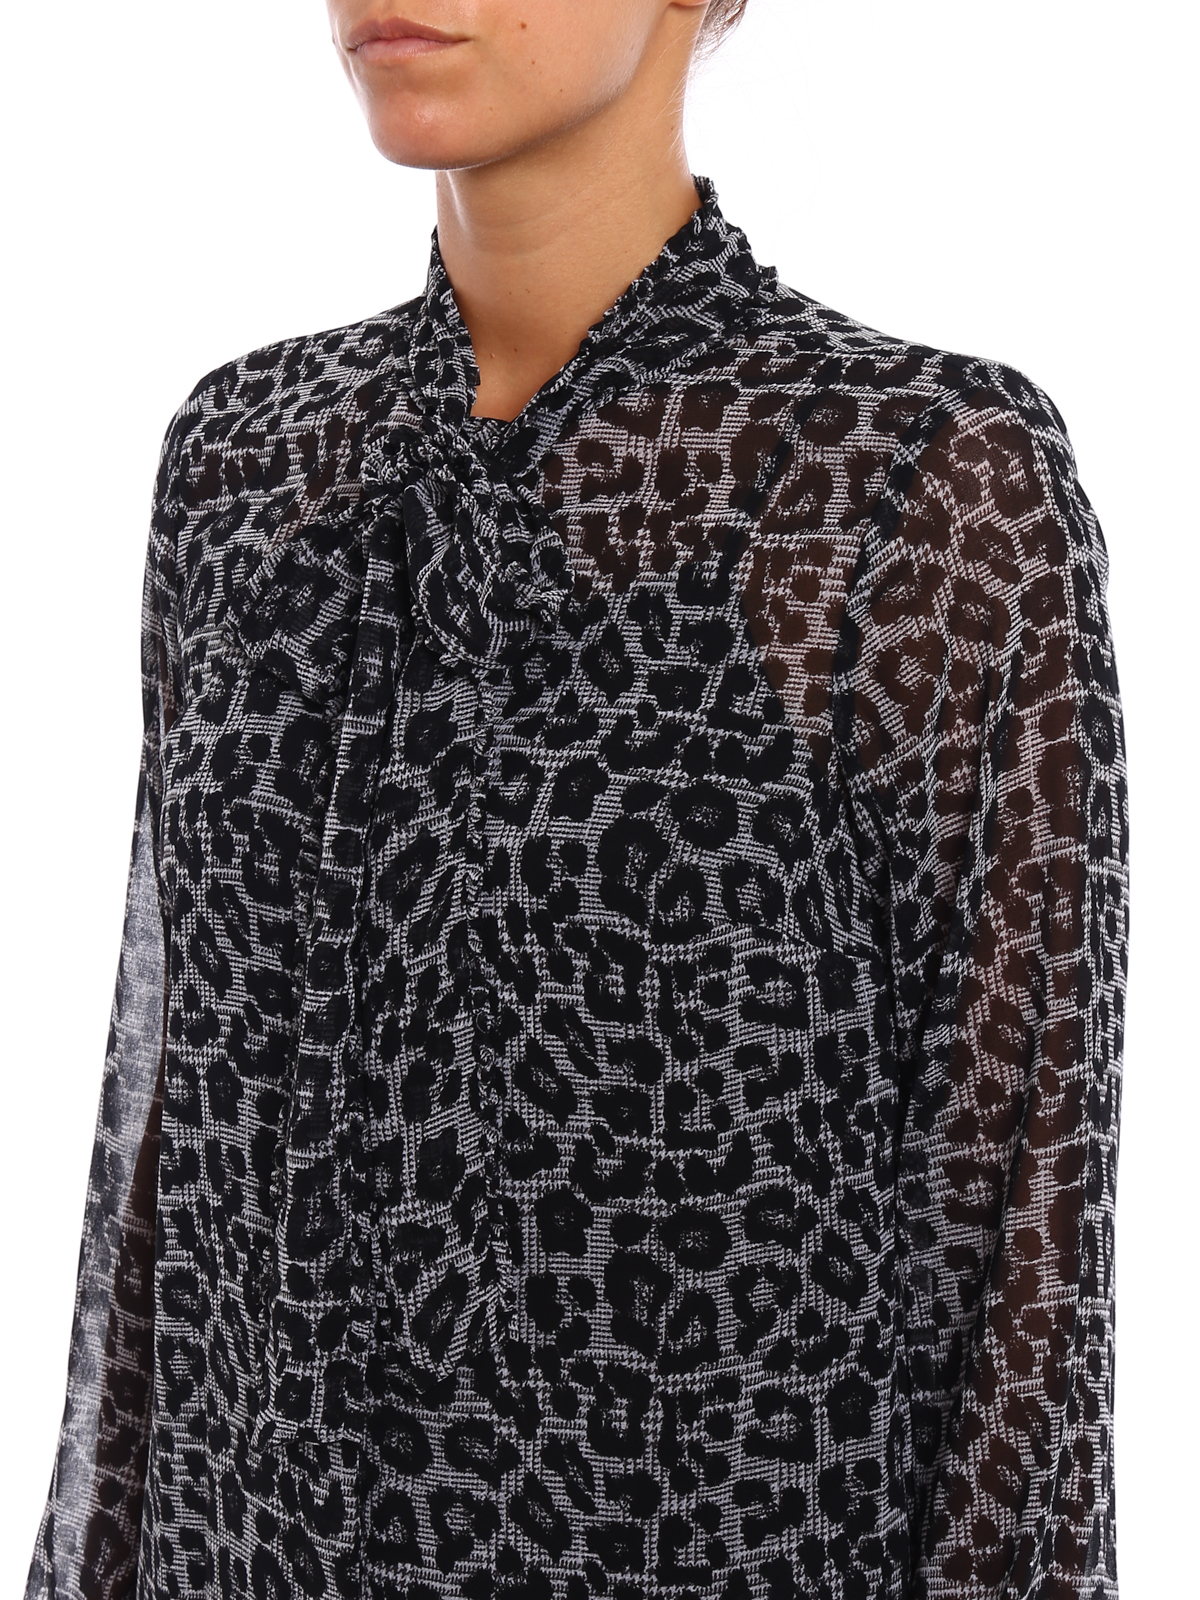 Shirts Michael Kors - Animal print shirt with bow - MF74L94782001